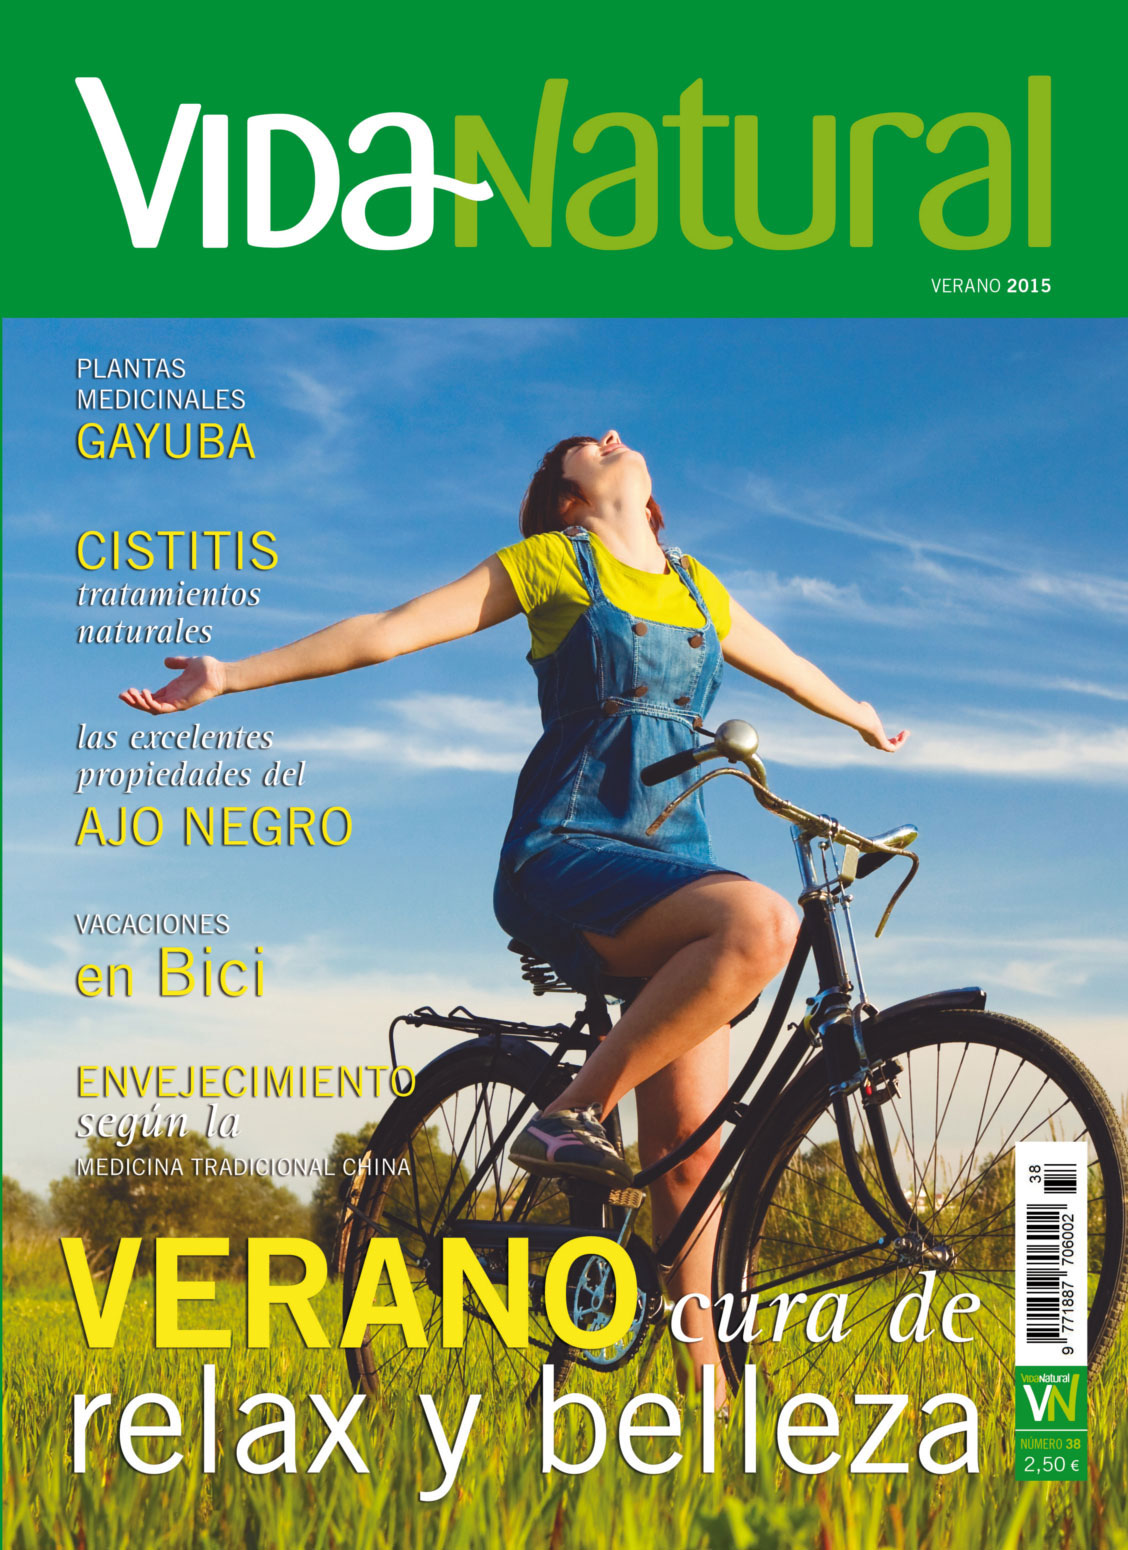 Revista Vida Natural nº 38 - Verano de 2015